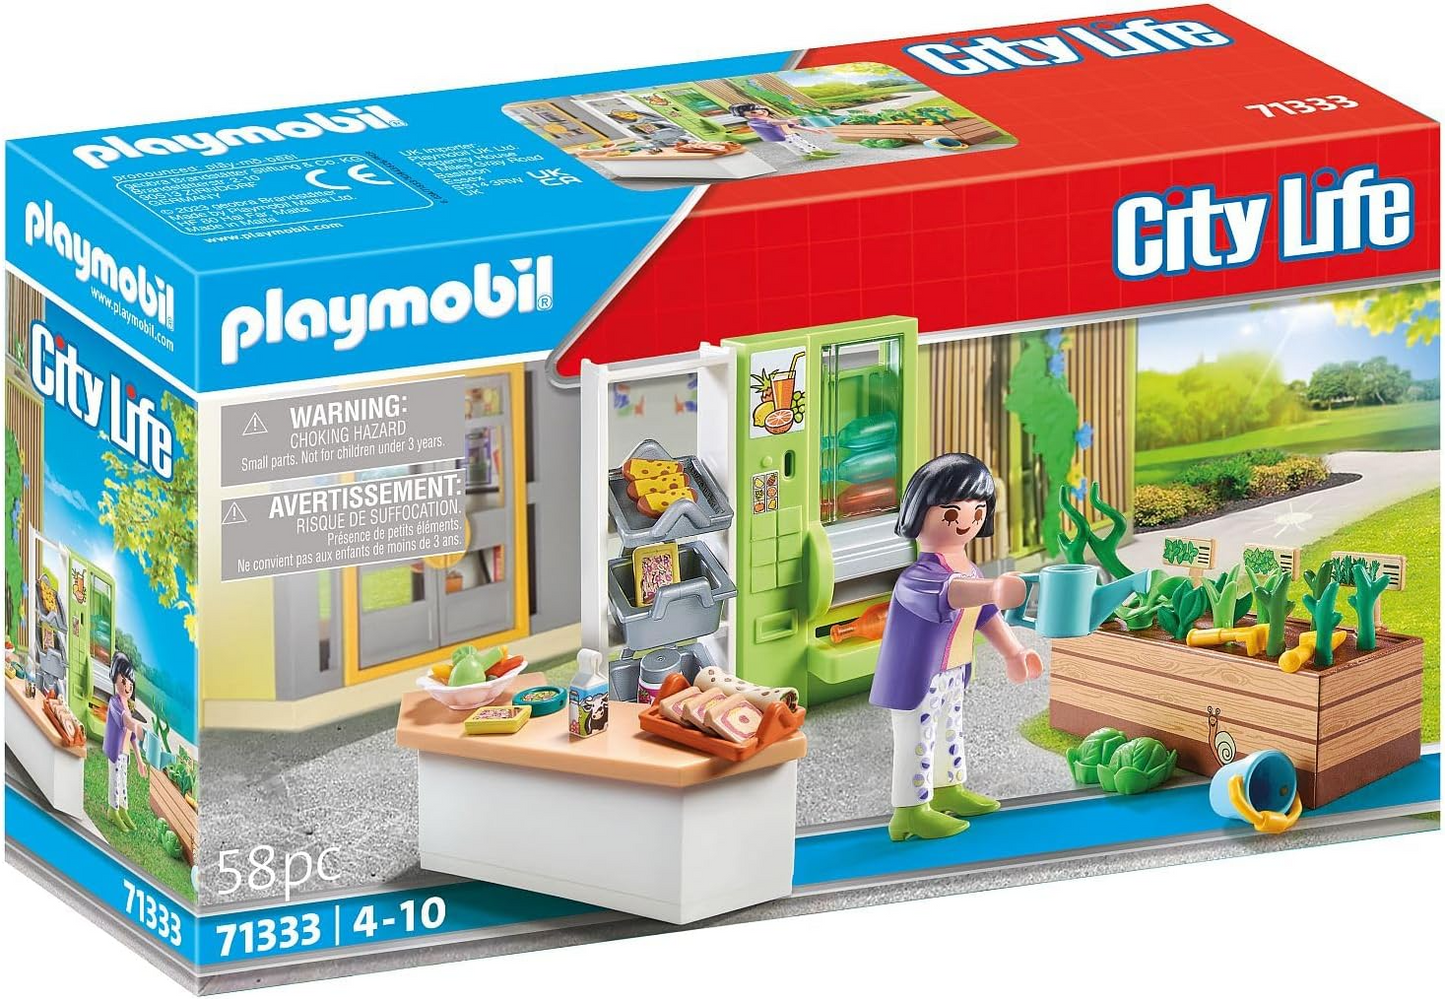 Playmobil 71333 Quiosque de almoço City Life, barraca de venda automática com máquina de garrafas enchíveis, dramatização divertida e imaginativa, conjuntos de jogos adequados para crianças de 4 anos ou mais